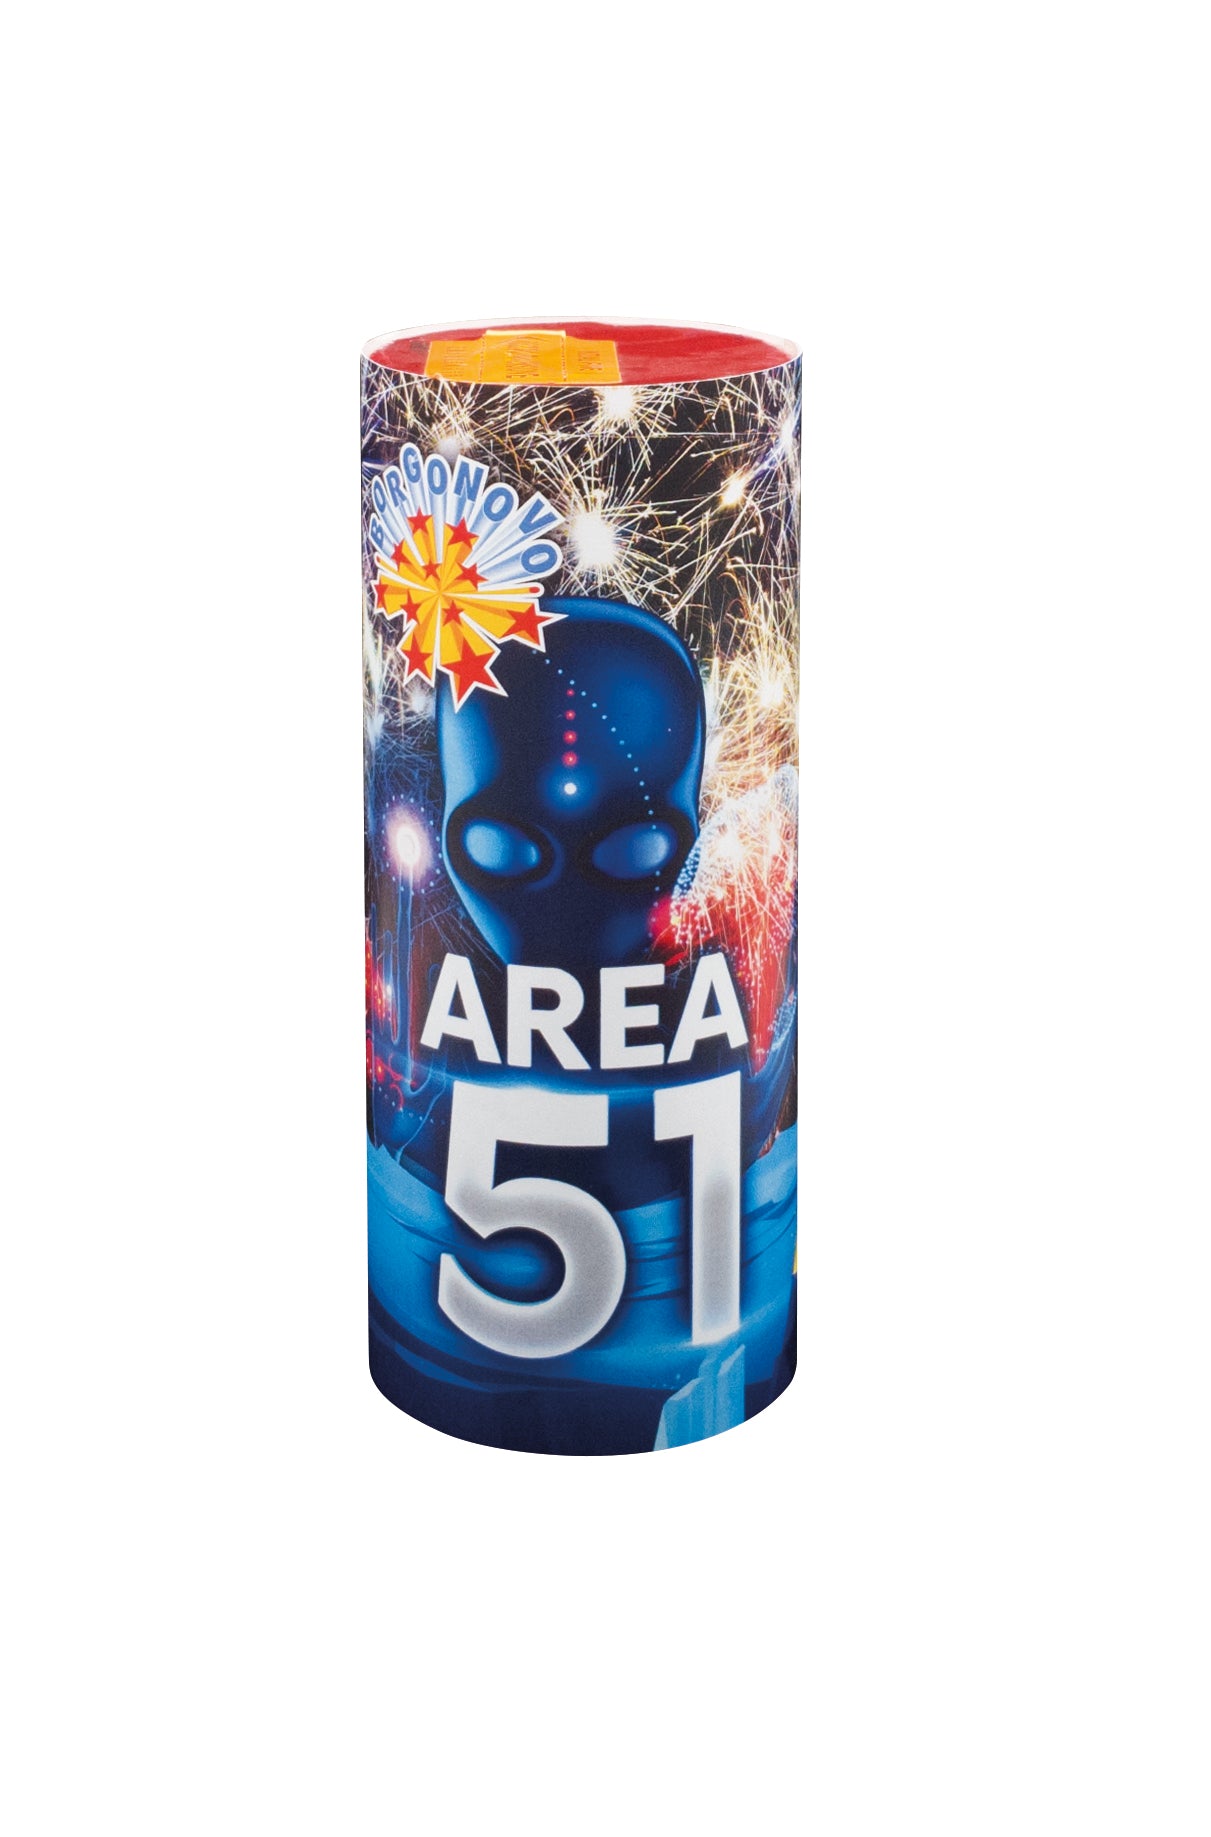 Fontana Area 51 Spettacolo Pirotecnico Capodanno Compleanno